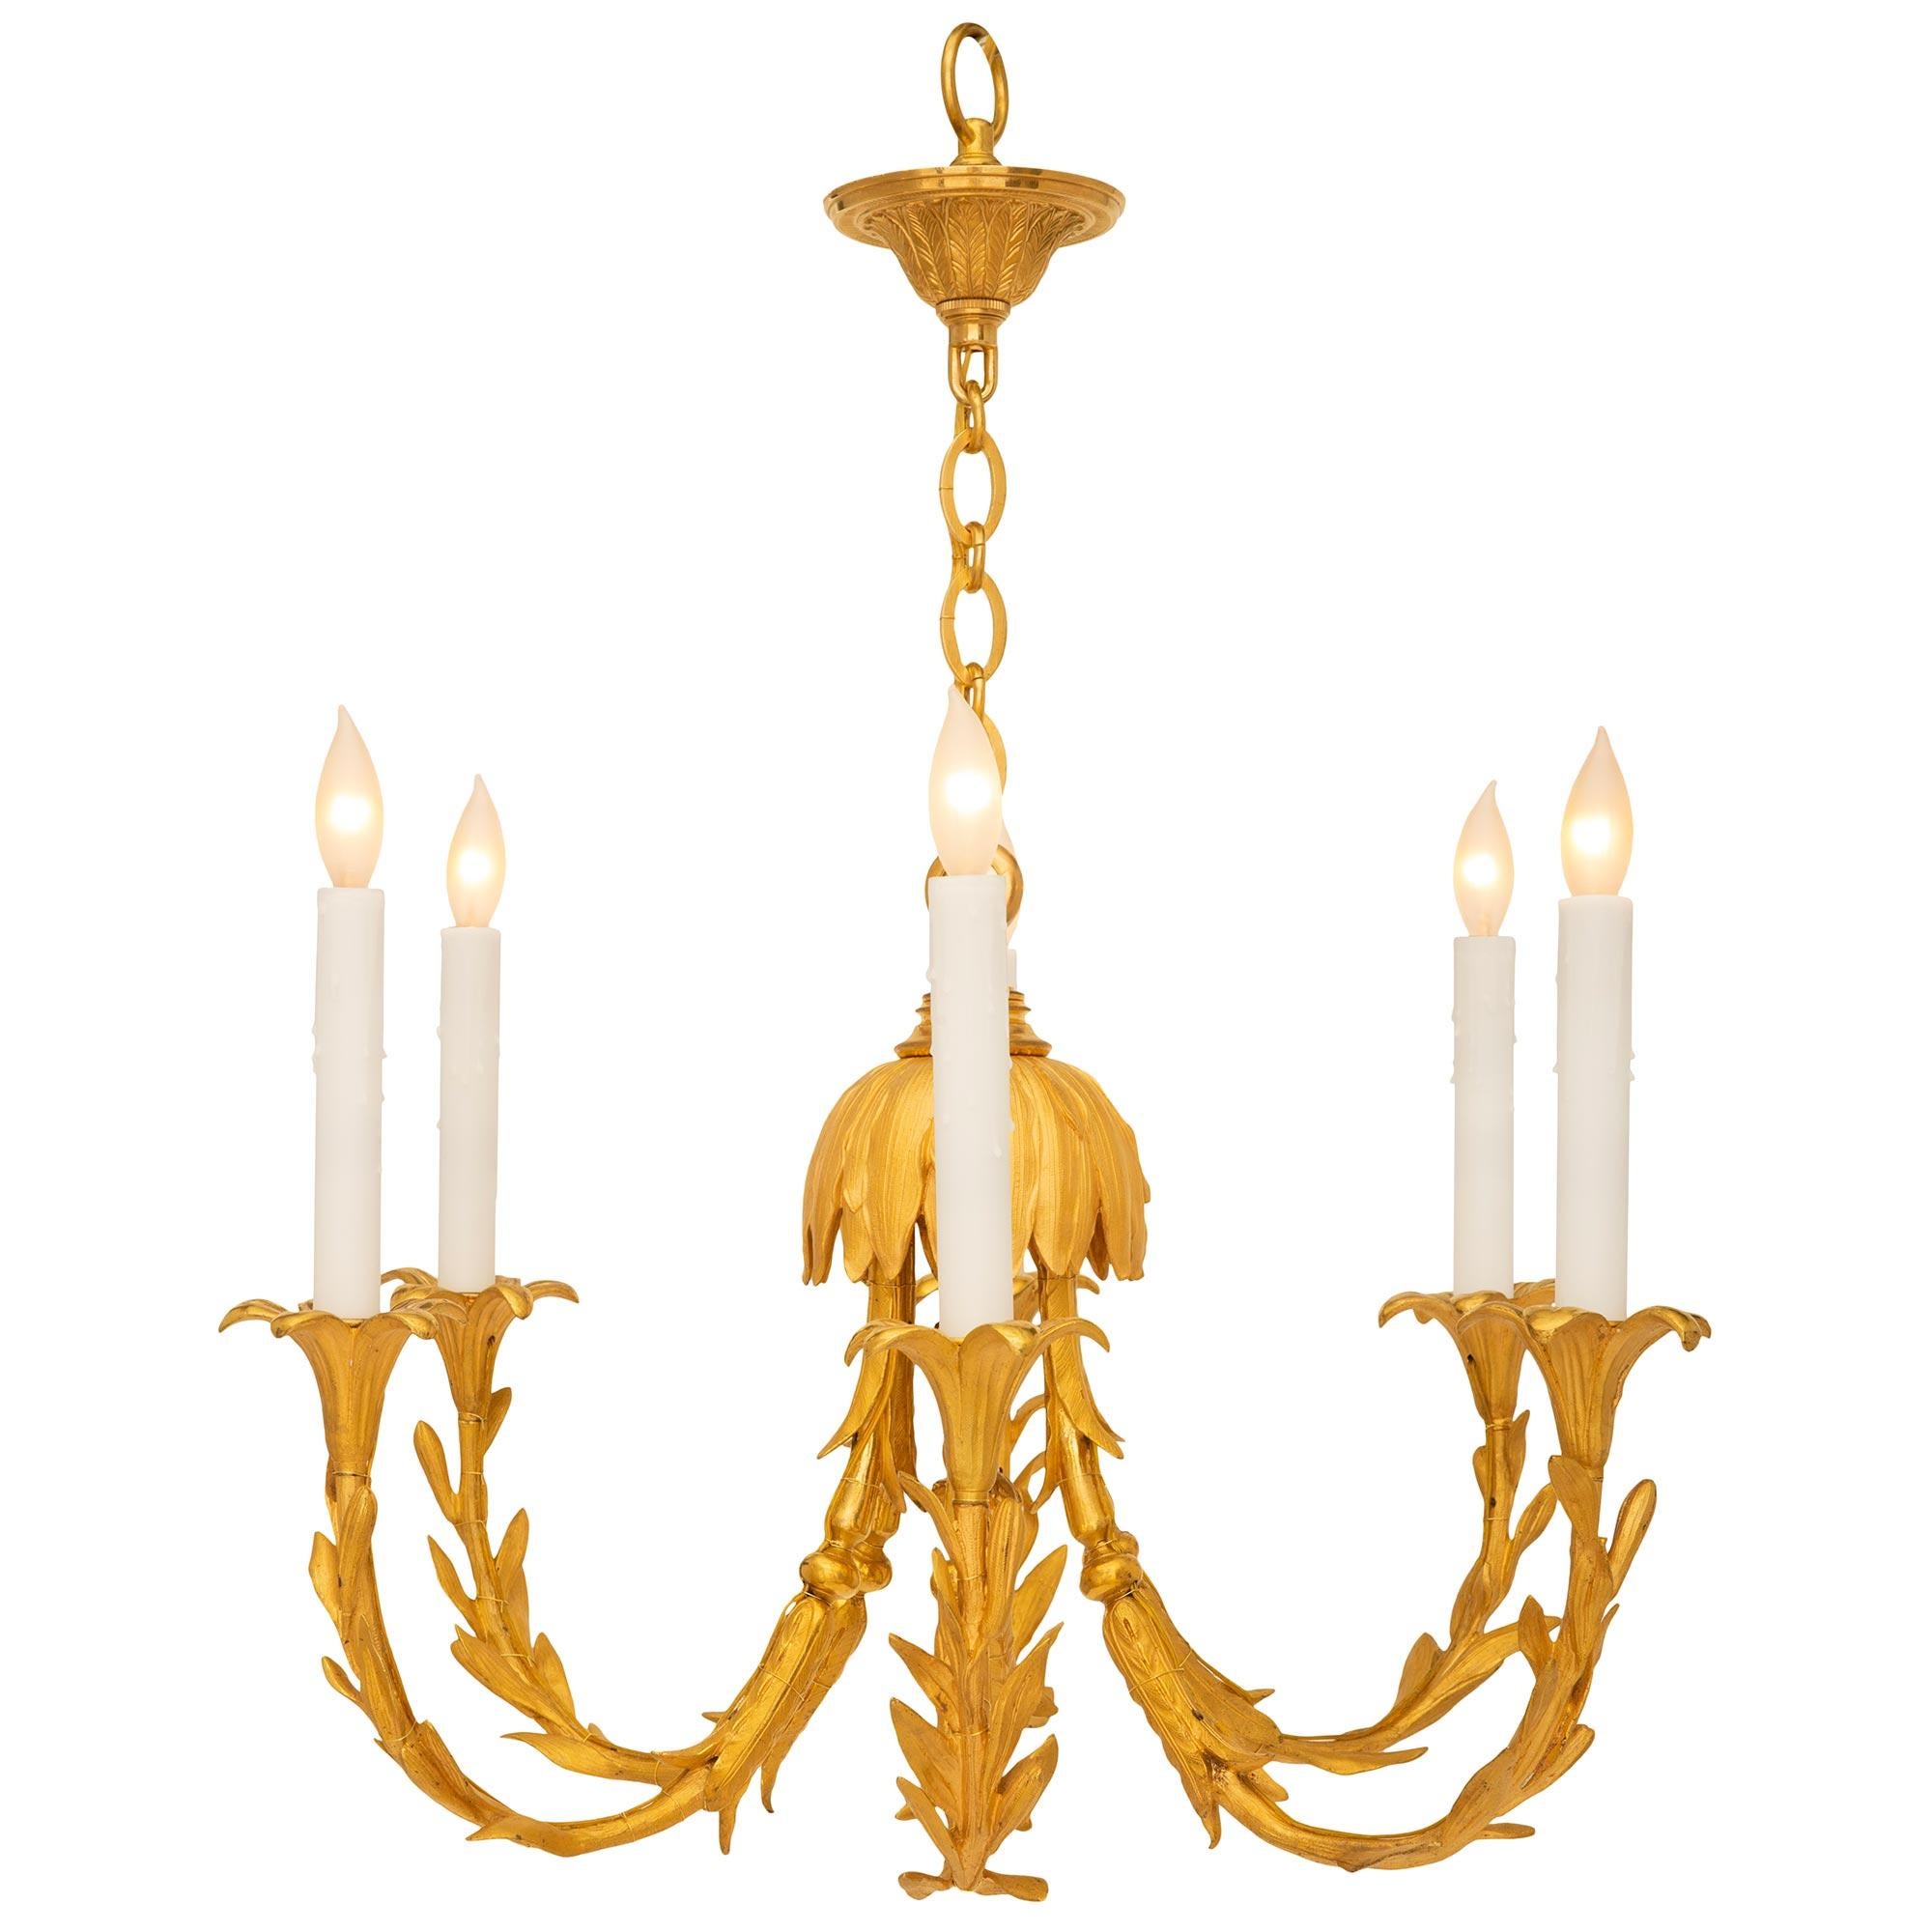 Magnifique et unique lustre en bronze doré de style Louis XVI du XIXe siècle. Le lustre à six bras présente des bras très décoratifs, élégamment courbés, avec des motifs exceptionnels ressemblant à des branches, avec des feuilles finement détaillées